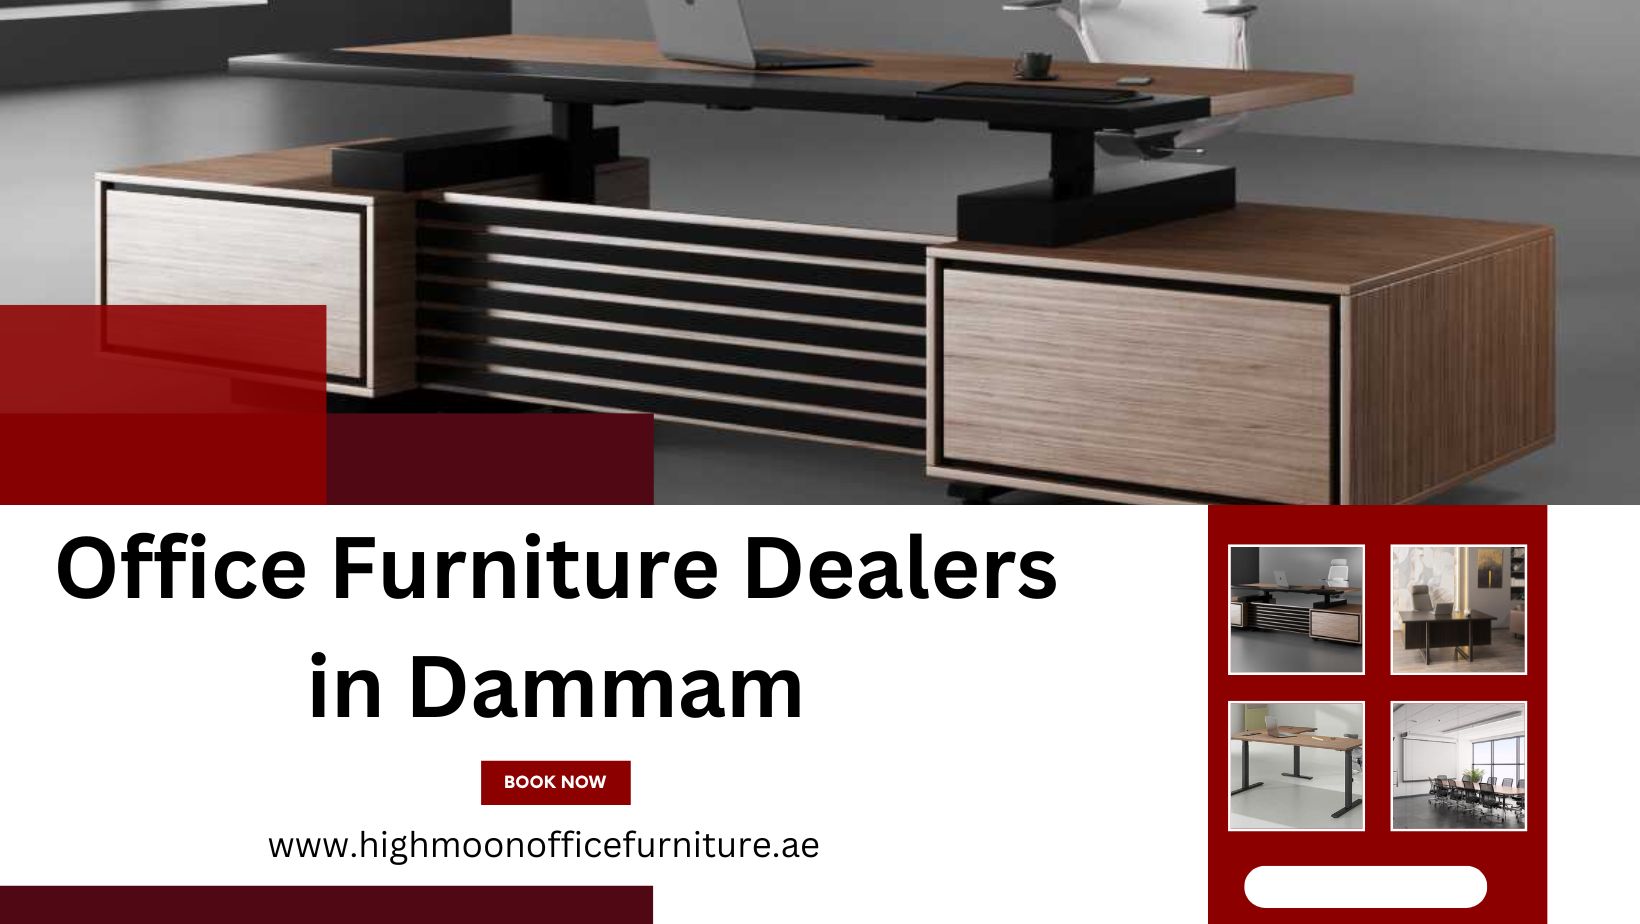 Office Furniture Dealers in Dammam